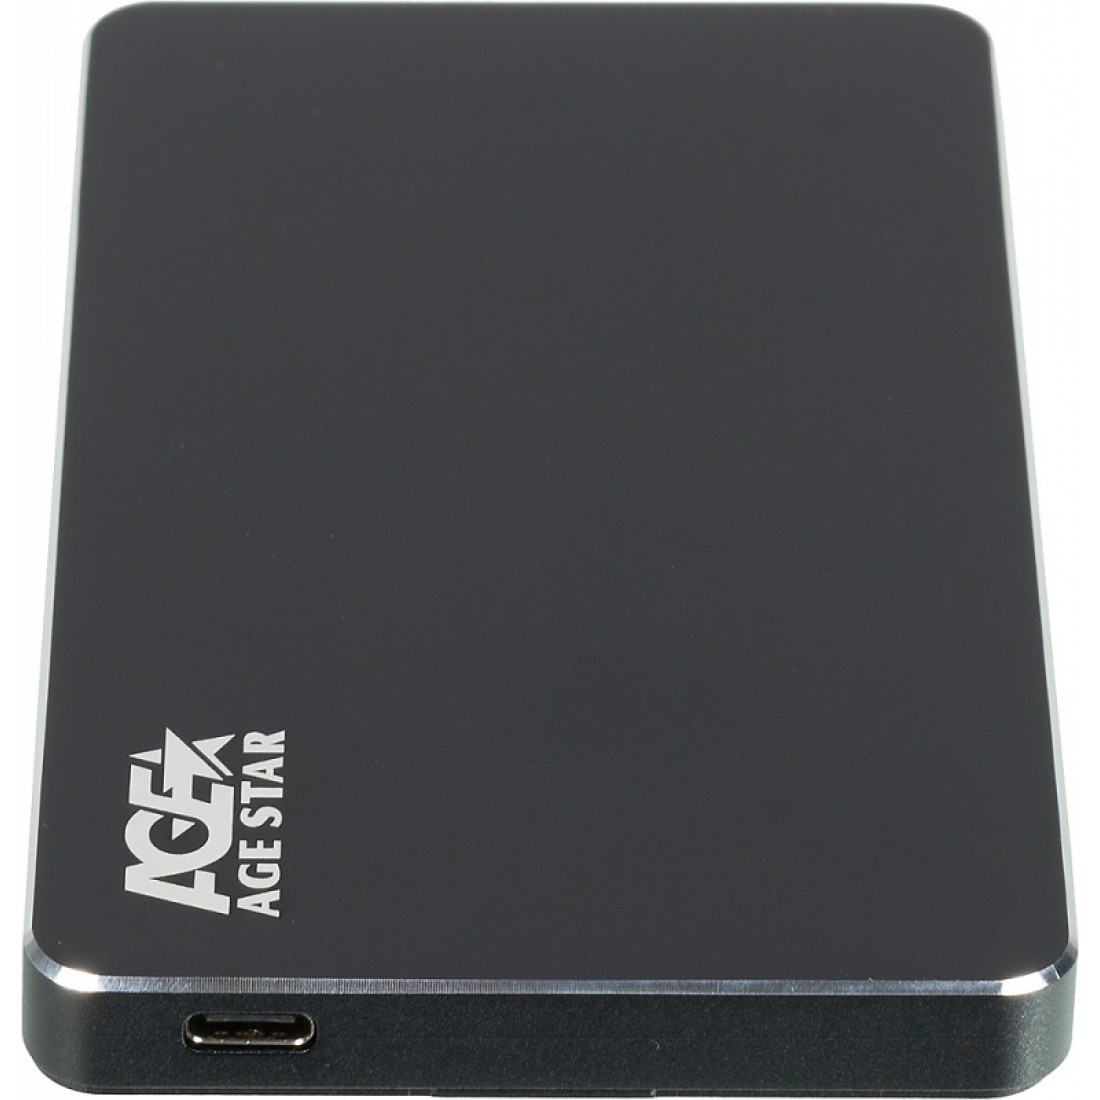 Внешний корпус для HDD/SSD AgeStar 3UB2AX2 SATA I/II/III алюминий черный 2.5 внешний корпус agestar для hdd ssd 3ub2p2 black